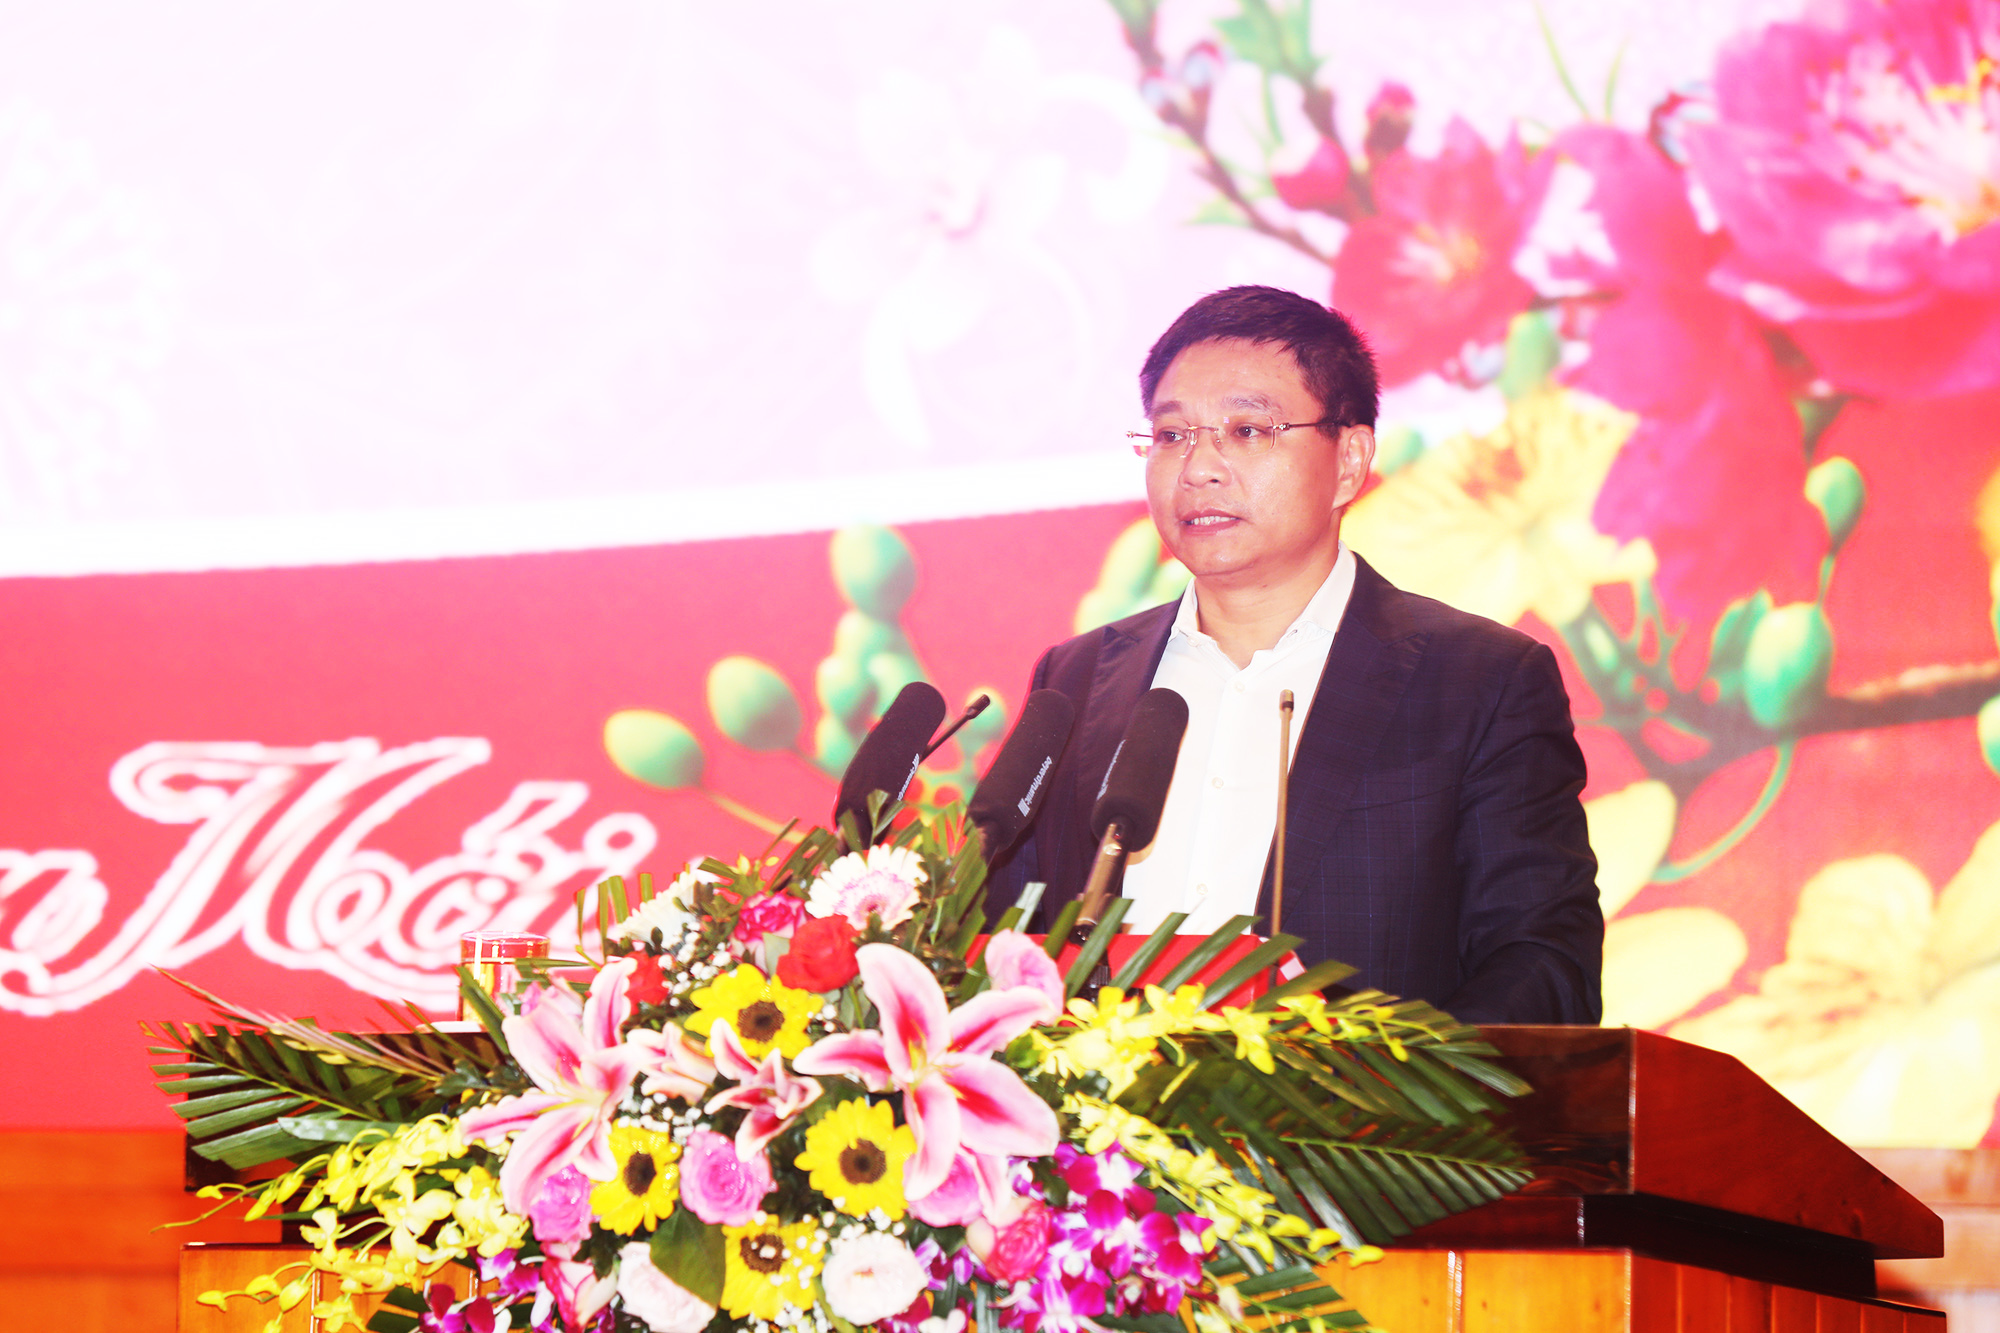 Đồng chí Nguyễn Văn Thắng, Phó Bí thư Tỉnh ủy, Chủ tịch UBND tỉnh báo cáo khái quát những nét nổi bật trong phát triển KT-XH của Quảng Ninh.